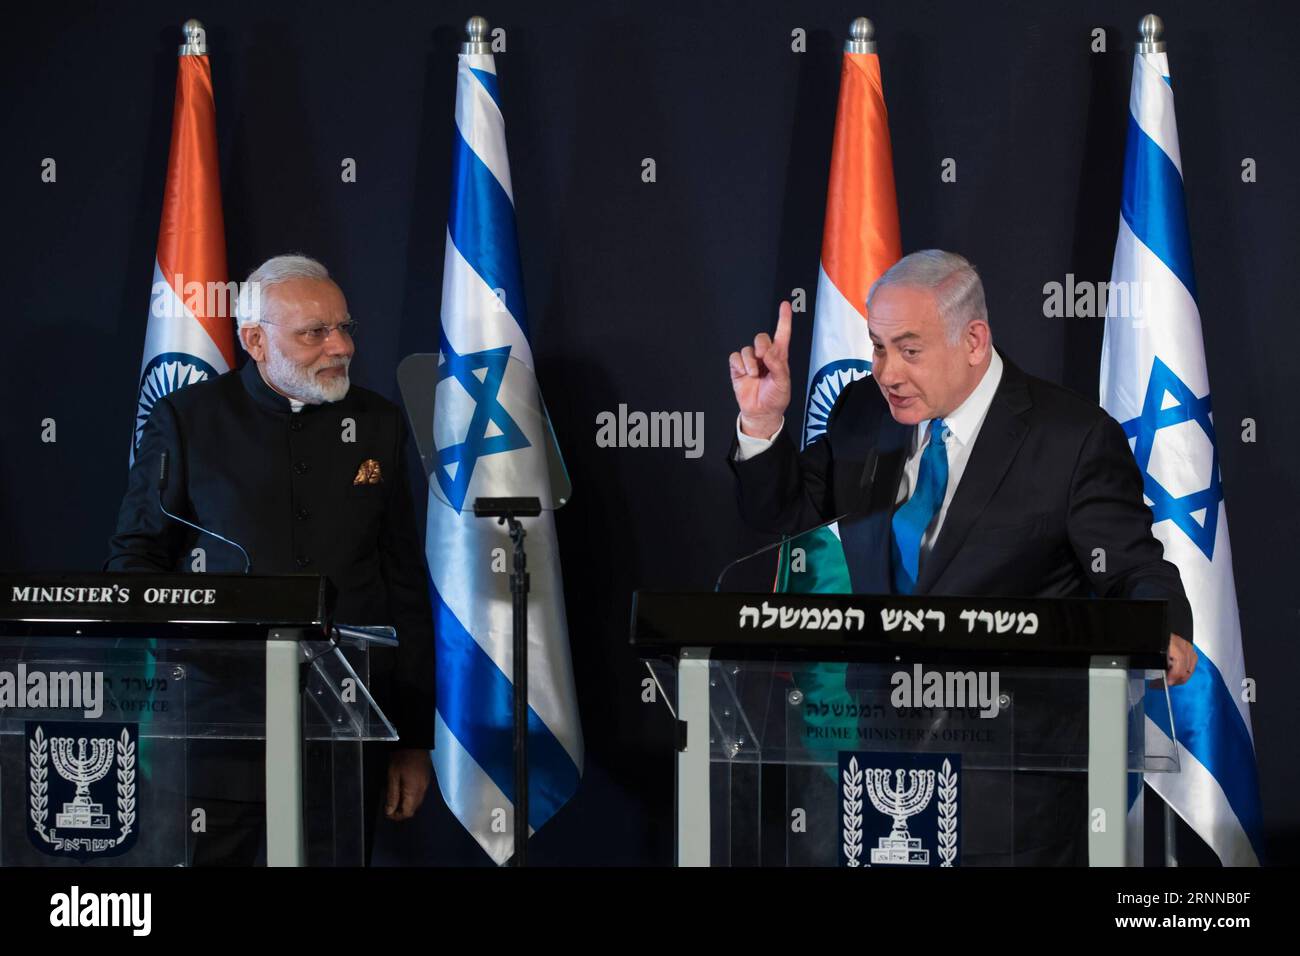 (170705) -- JÉRUSALEM, le 5 juillet 2017 -- le Premier ministre israélien Benjamin Netanyahu (R) et son homologue indien Narendra Modi assistent à une conférence de presse conjointe à Jérusalem, le 5 juillet 2017. Le Premier ministre indien Narendra Modi a débarqué en Israël mardi pour la toute première visite d'un Premier ministre indien dans le pays, dans le but de renforcer les liens globaux. (djj) MIDEAST-JERUSALEM-ISRAEL-INDIA-PM-EXCHANGE OF AGREEMENTS GuoxYu PUBLICATIONxNOTxINxCHN Jérusalem juillet 5 2017 les premiers ministres israéliens Benjamin Netanyahu r et sa partie indienne Narendra modes assistent à une conférence de presse conjointe à Jérusalem SUR Ju Banque D'Images